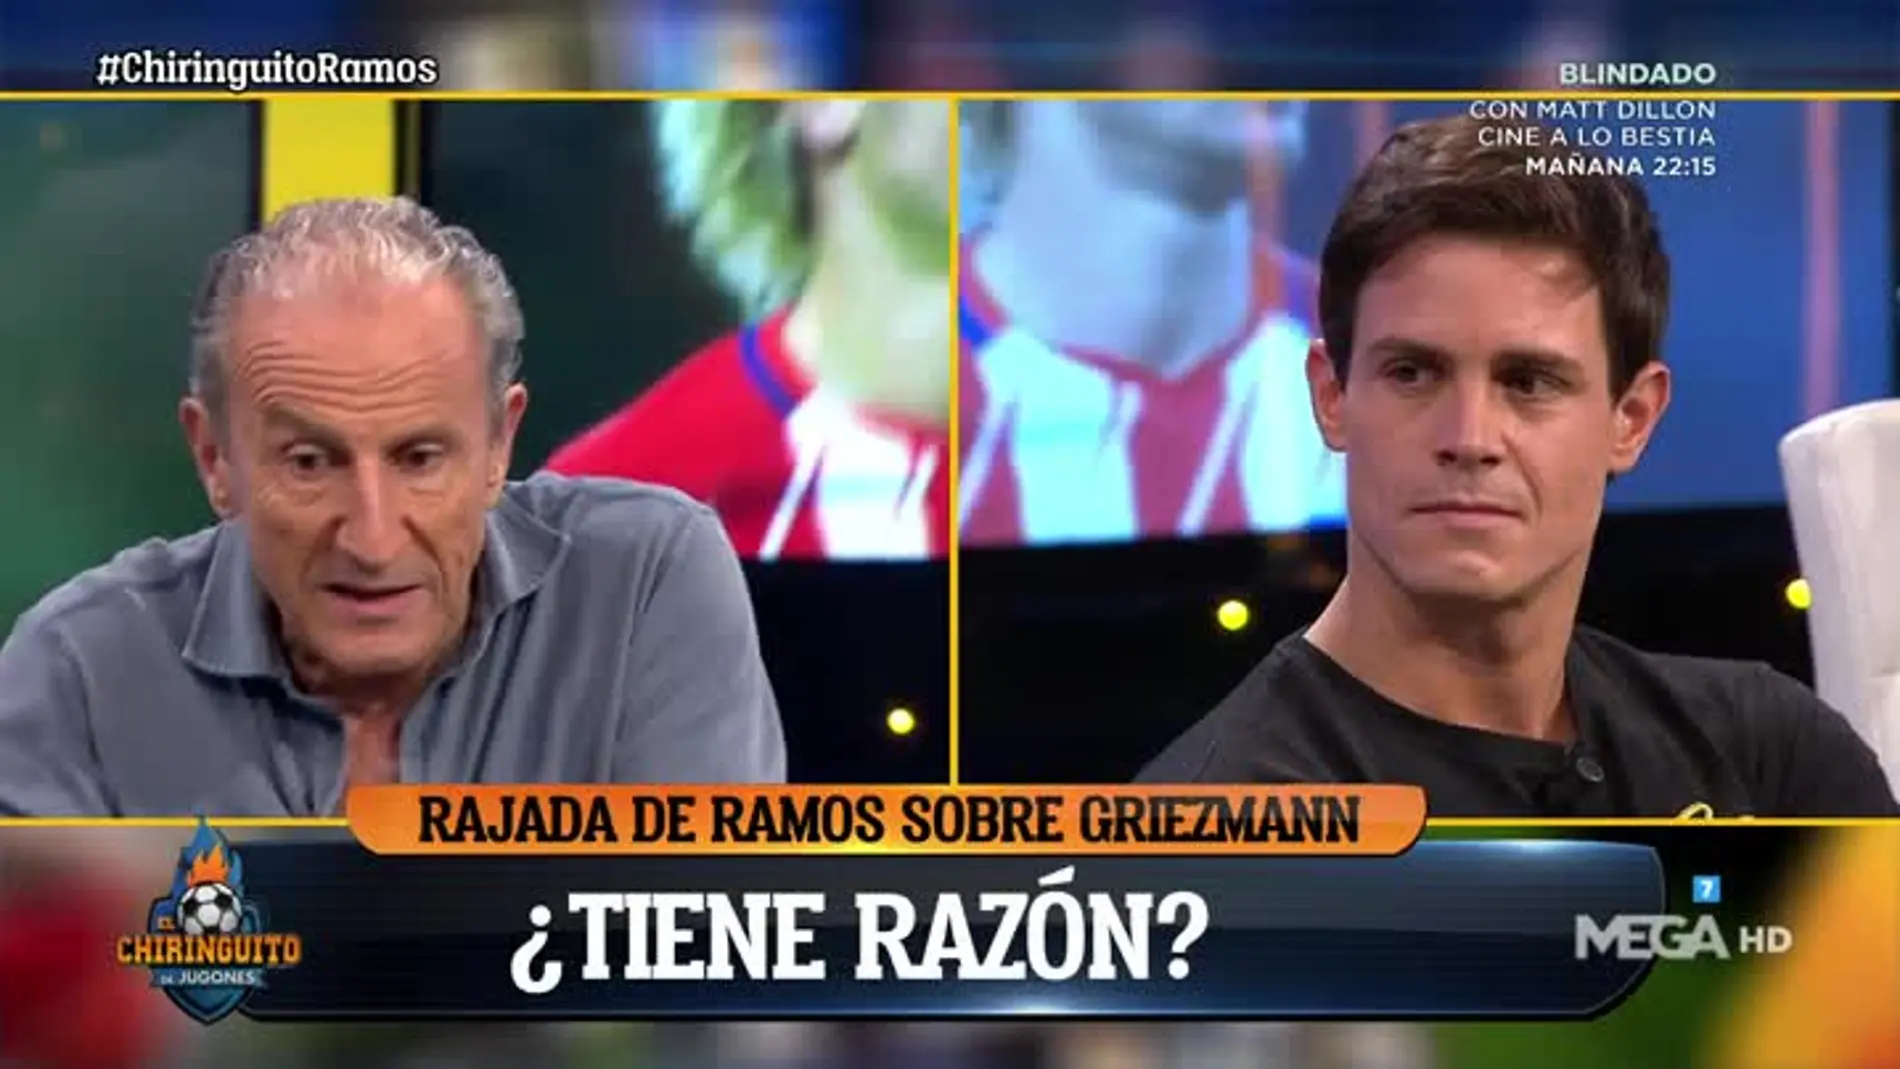 ¿Tiene razón Ramos al hablar así sobre Griezmann?